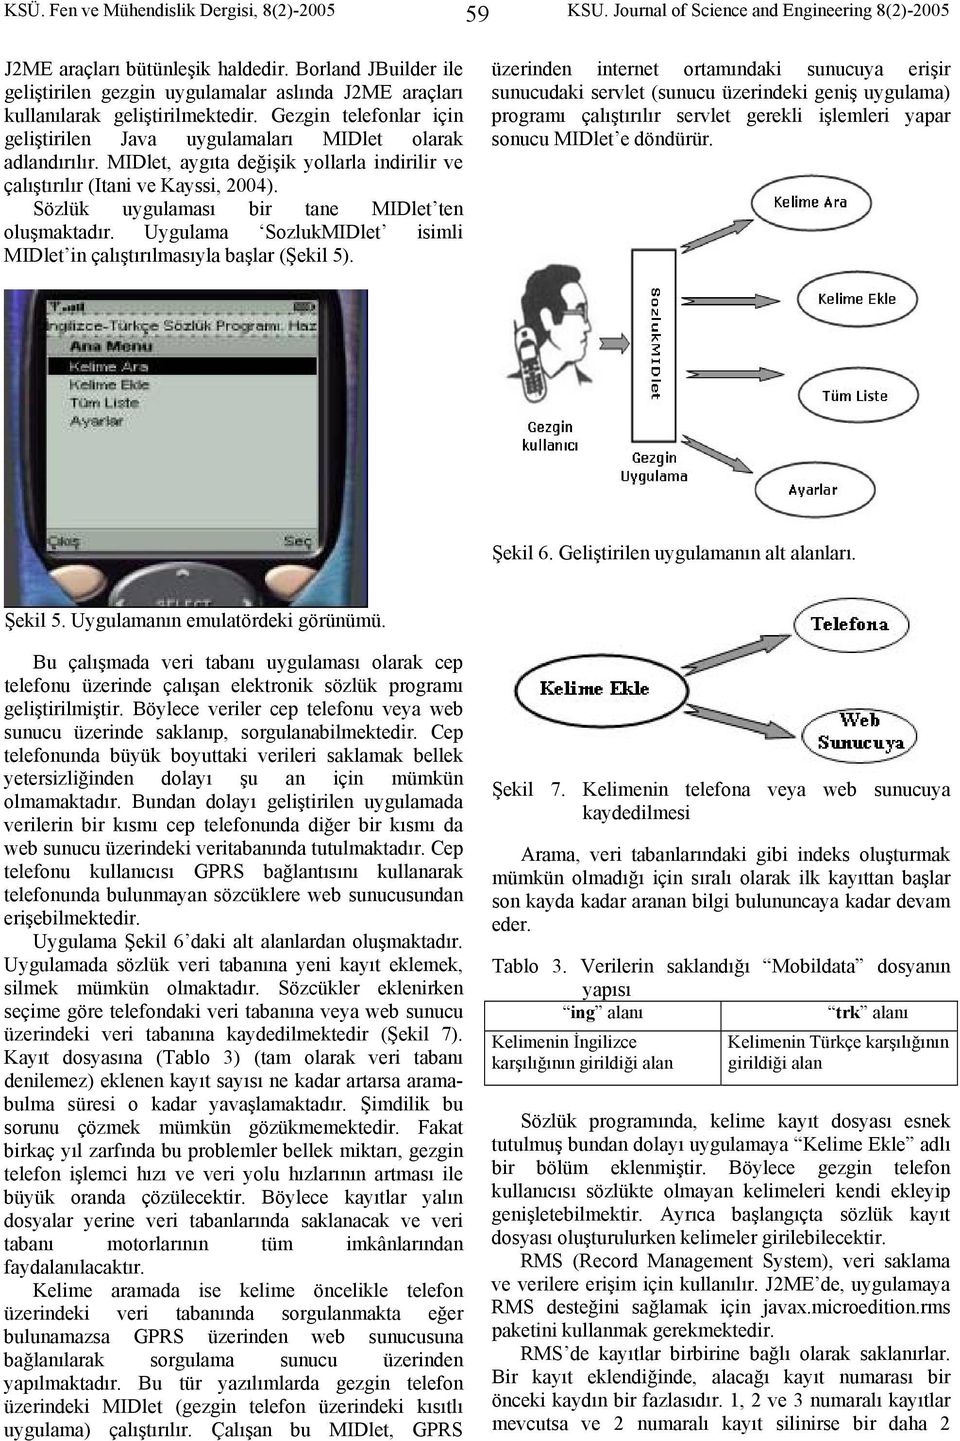 MIDlet, aygıta değişik yollarla indirilir ve çalıştırılır (Itani ve Kayssi, 2004). Sözlük uygulaması bir tane MIDlet ten oluşmaktadır.